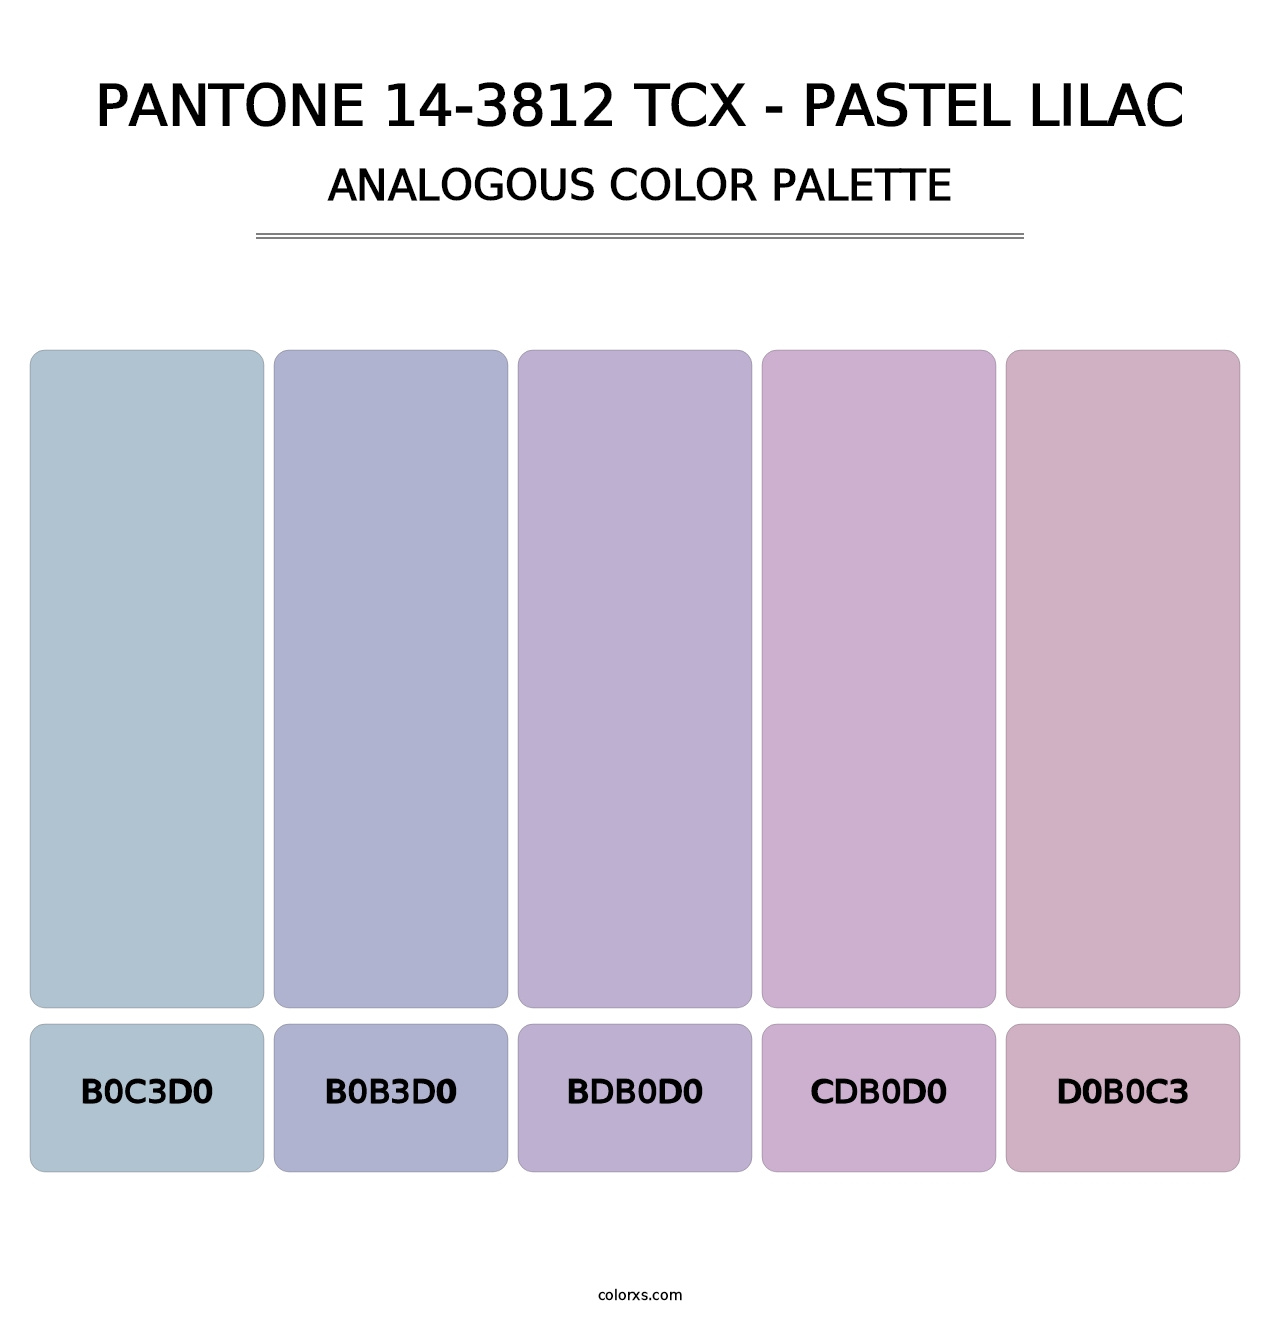 PANTONE 14-3812 TCX - Pastel Lilac - Analogous Color Palette